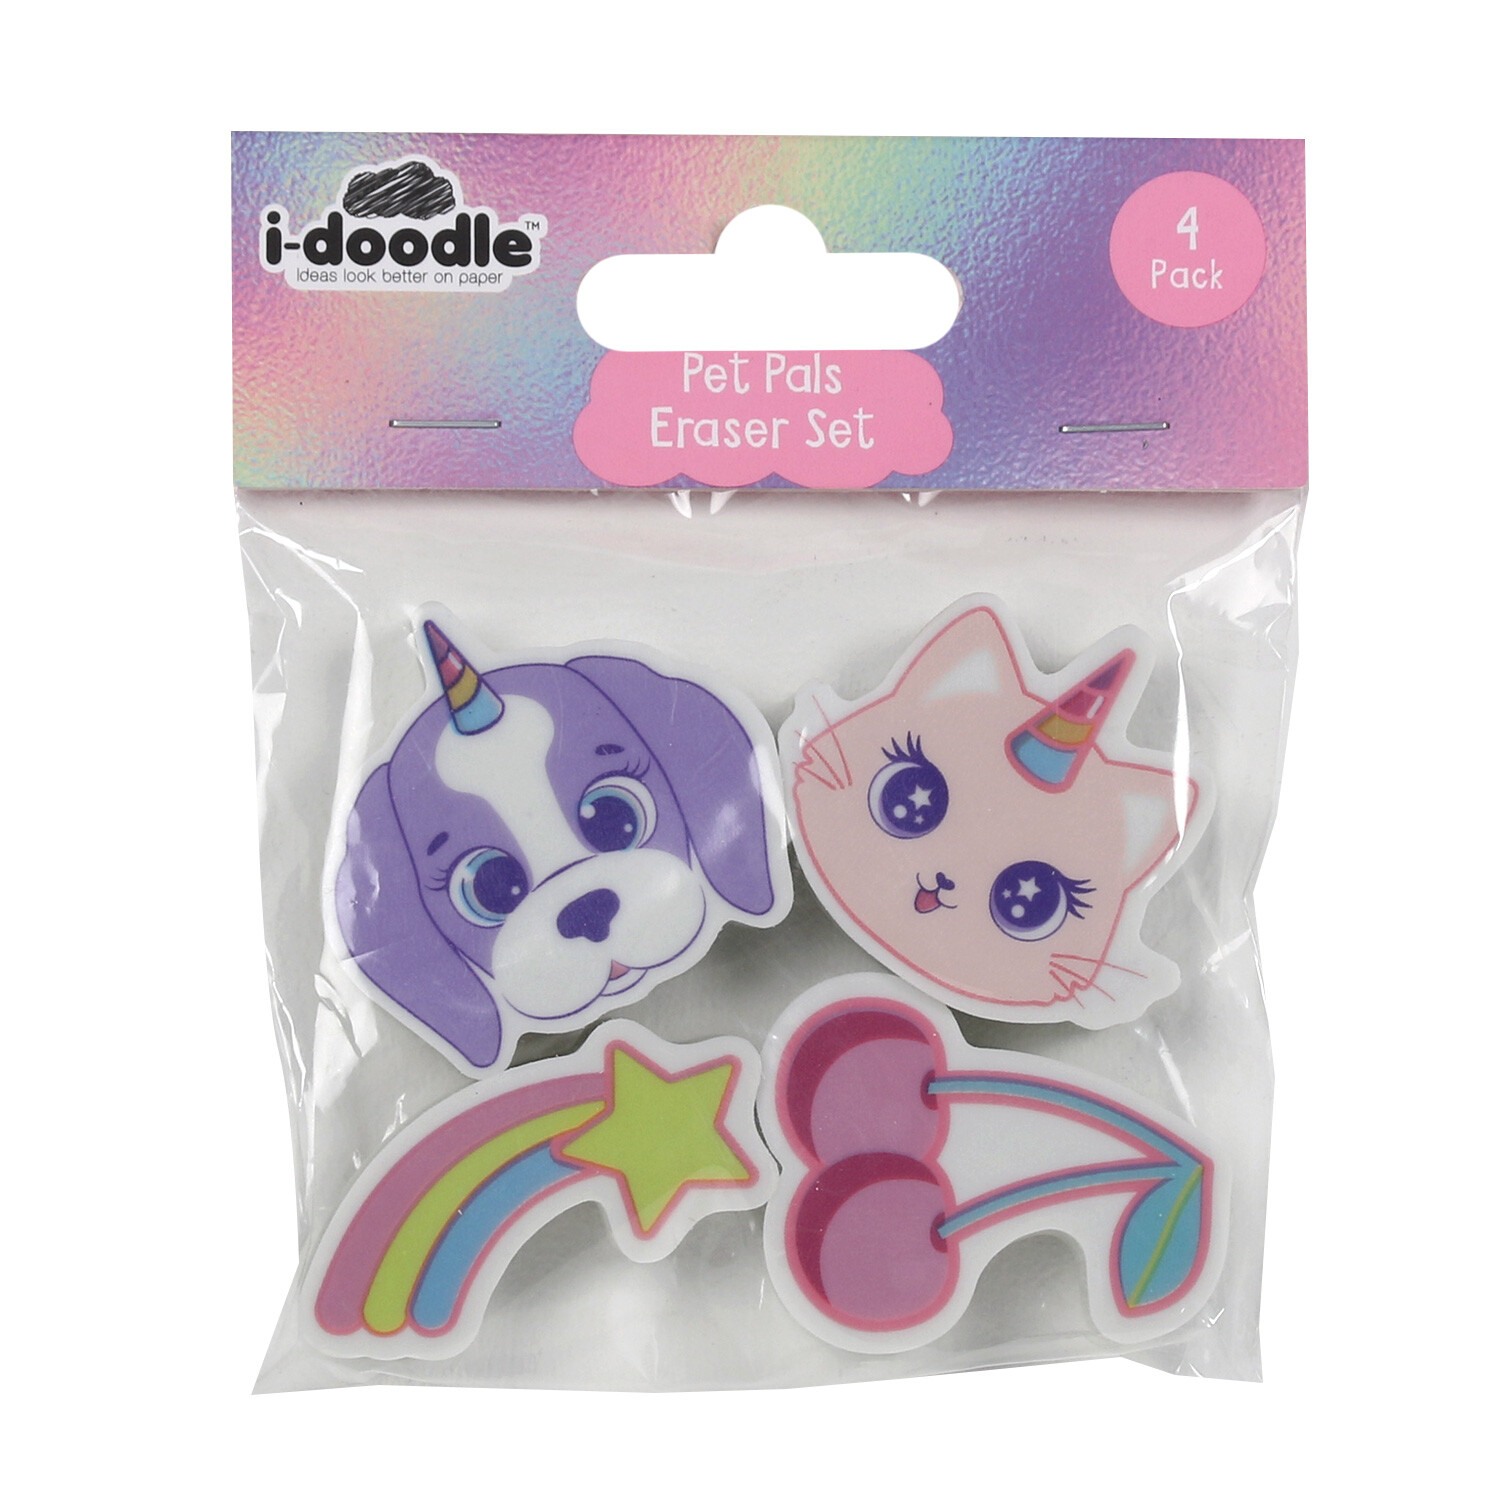 Pack of 4 Idoodle Pet Pals Eraser set Image 1